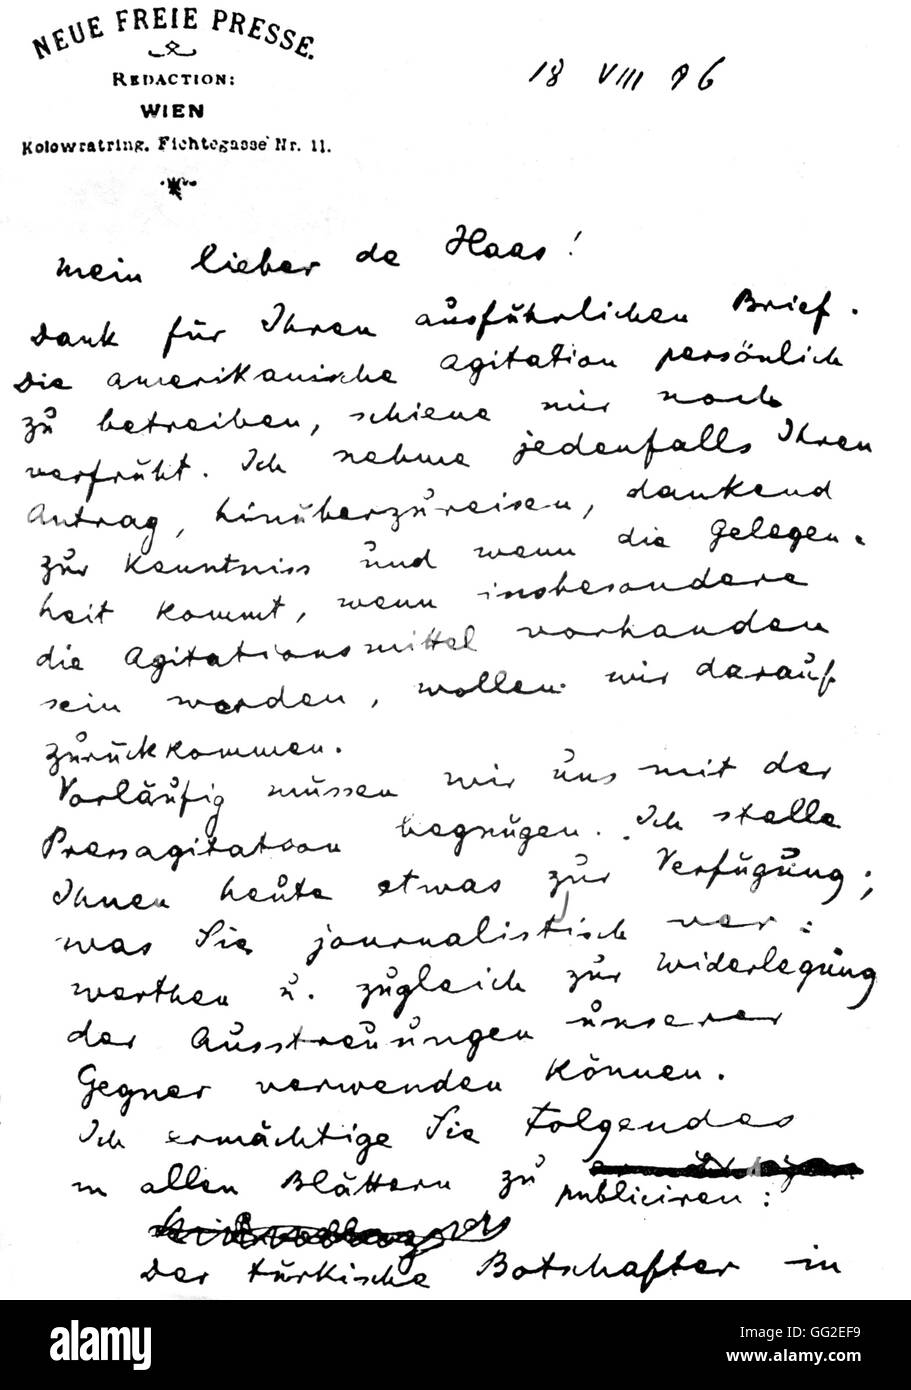 Lettera di Herzl negando l'espulsione dei palestinesi, pagina 1 Agosto 18, 1896 la Palestina, il Sionismo Bibliothèque de l'alliance israélite universelle Foto Stock